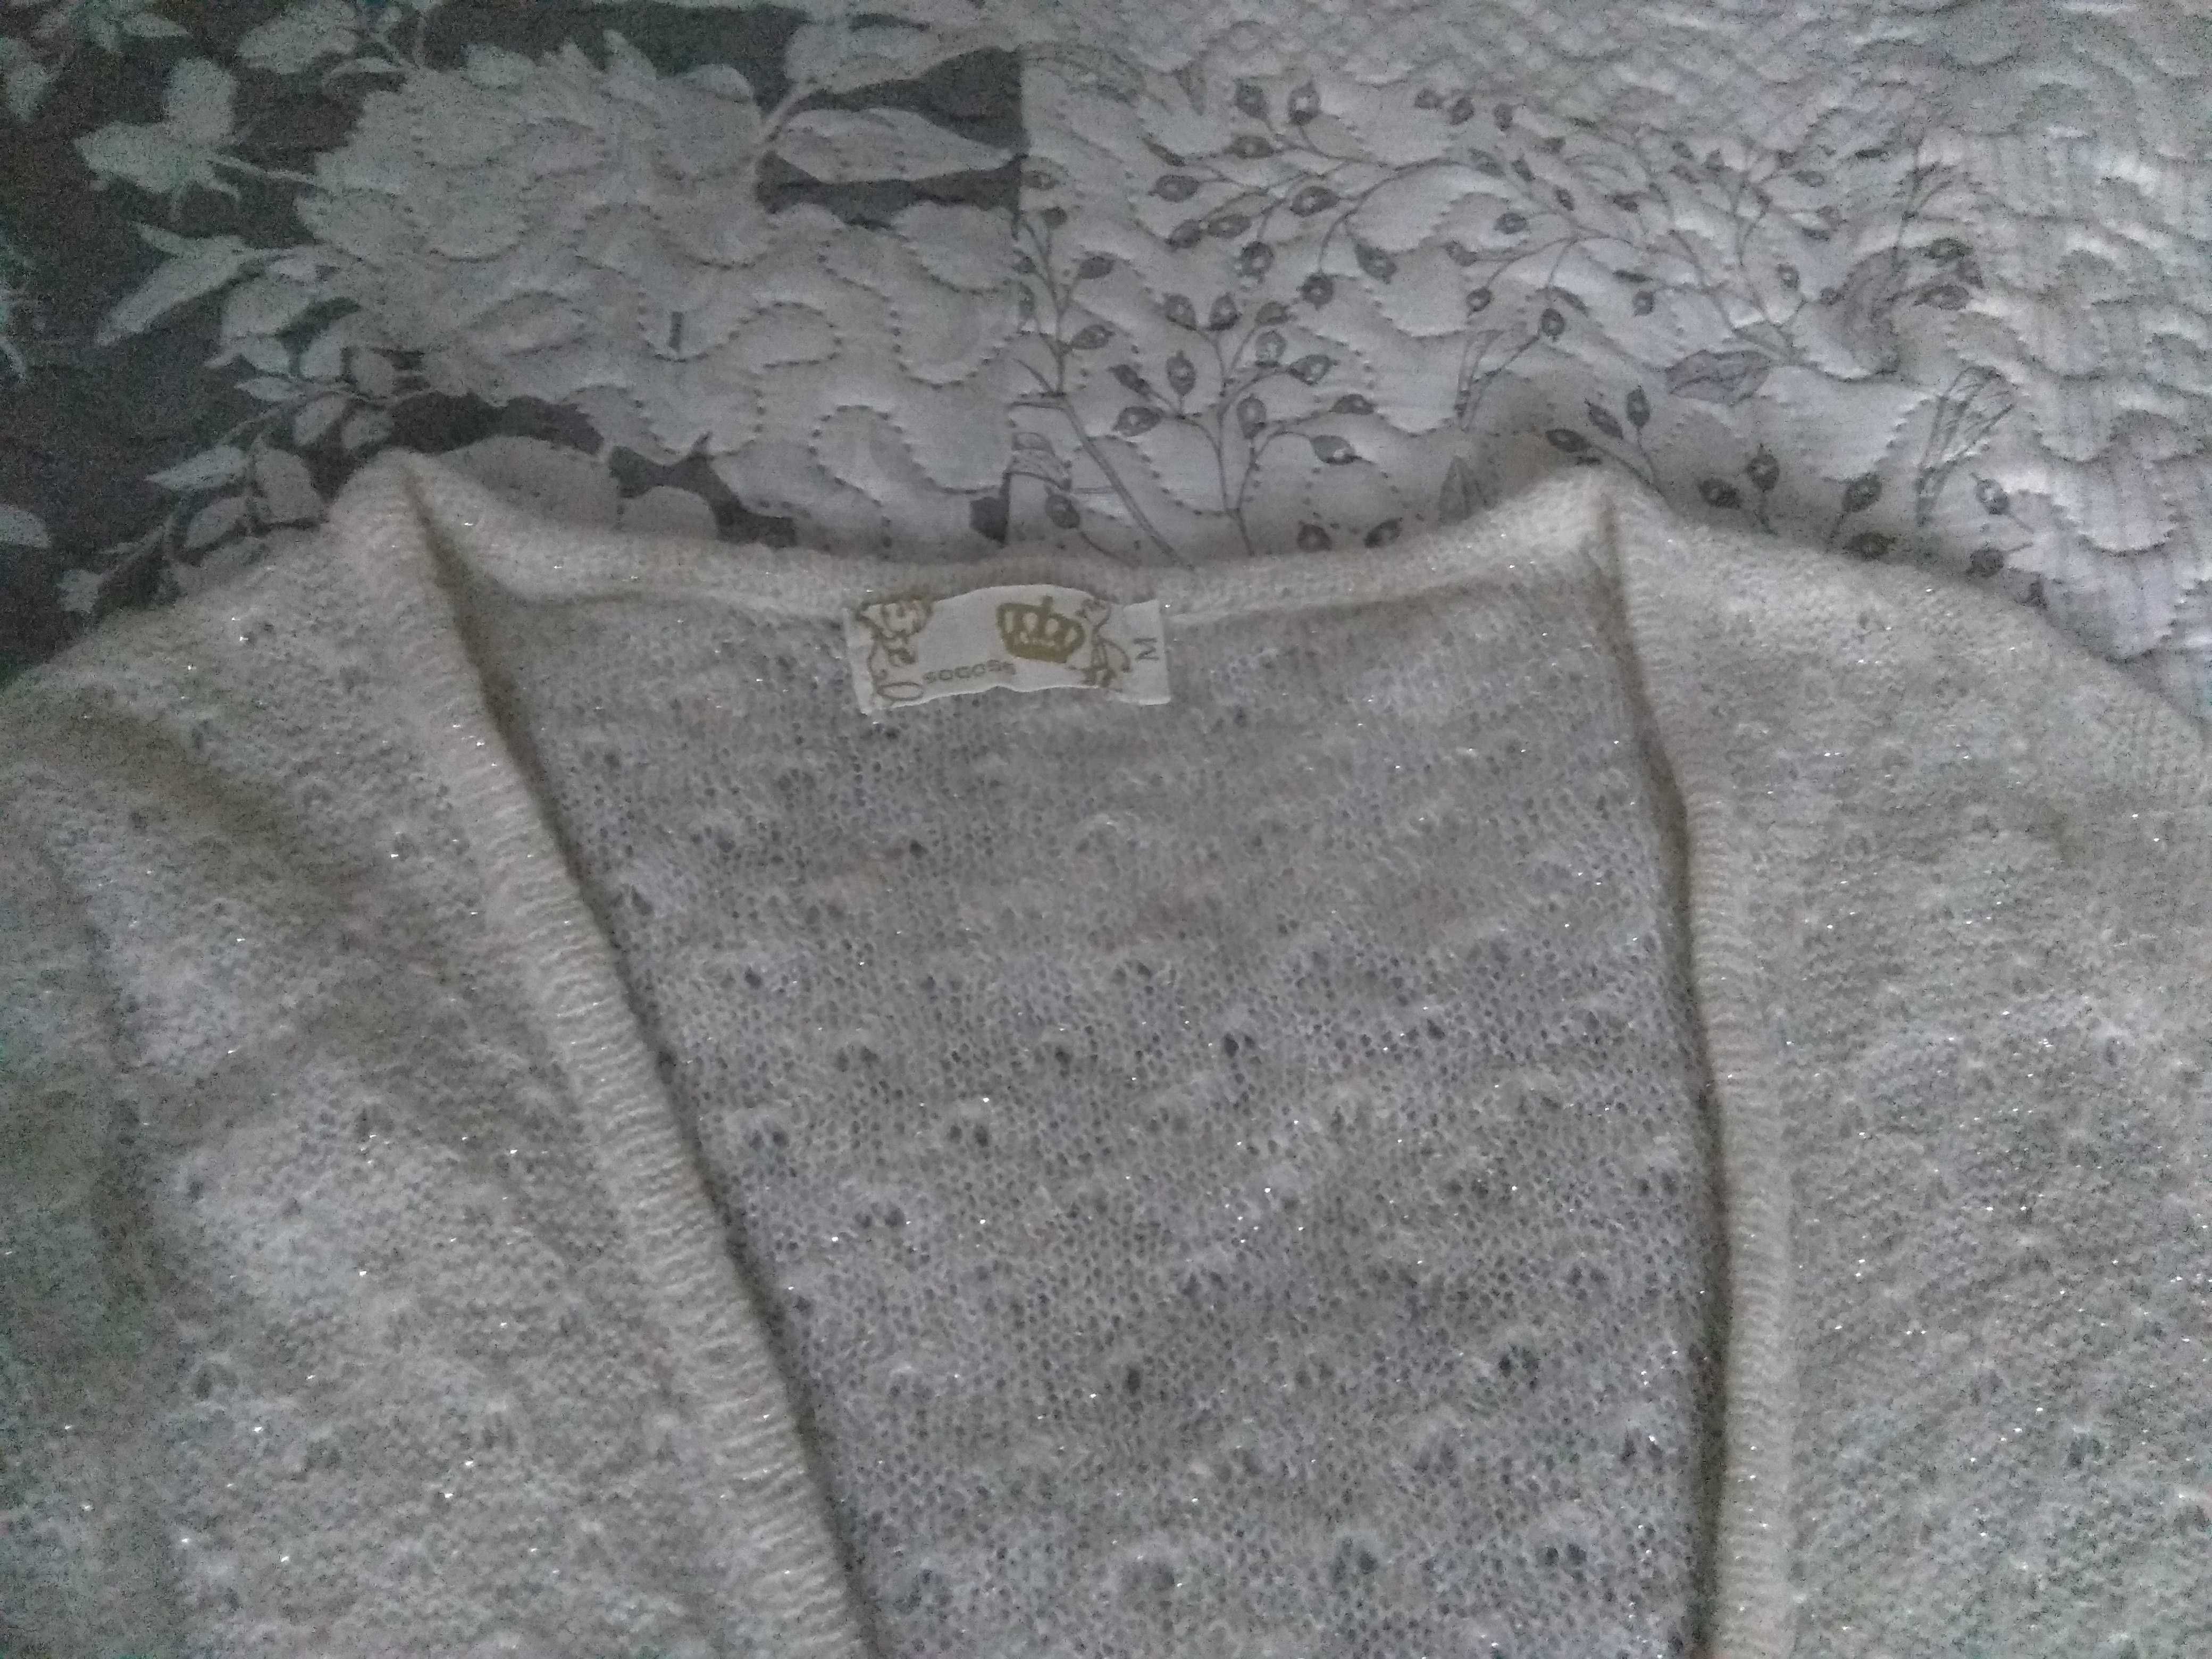 Sweter damski M kremowy wiązany w talii rękaw 3/4 sweterek